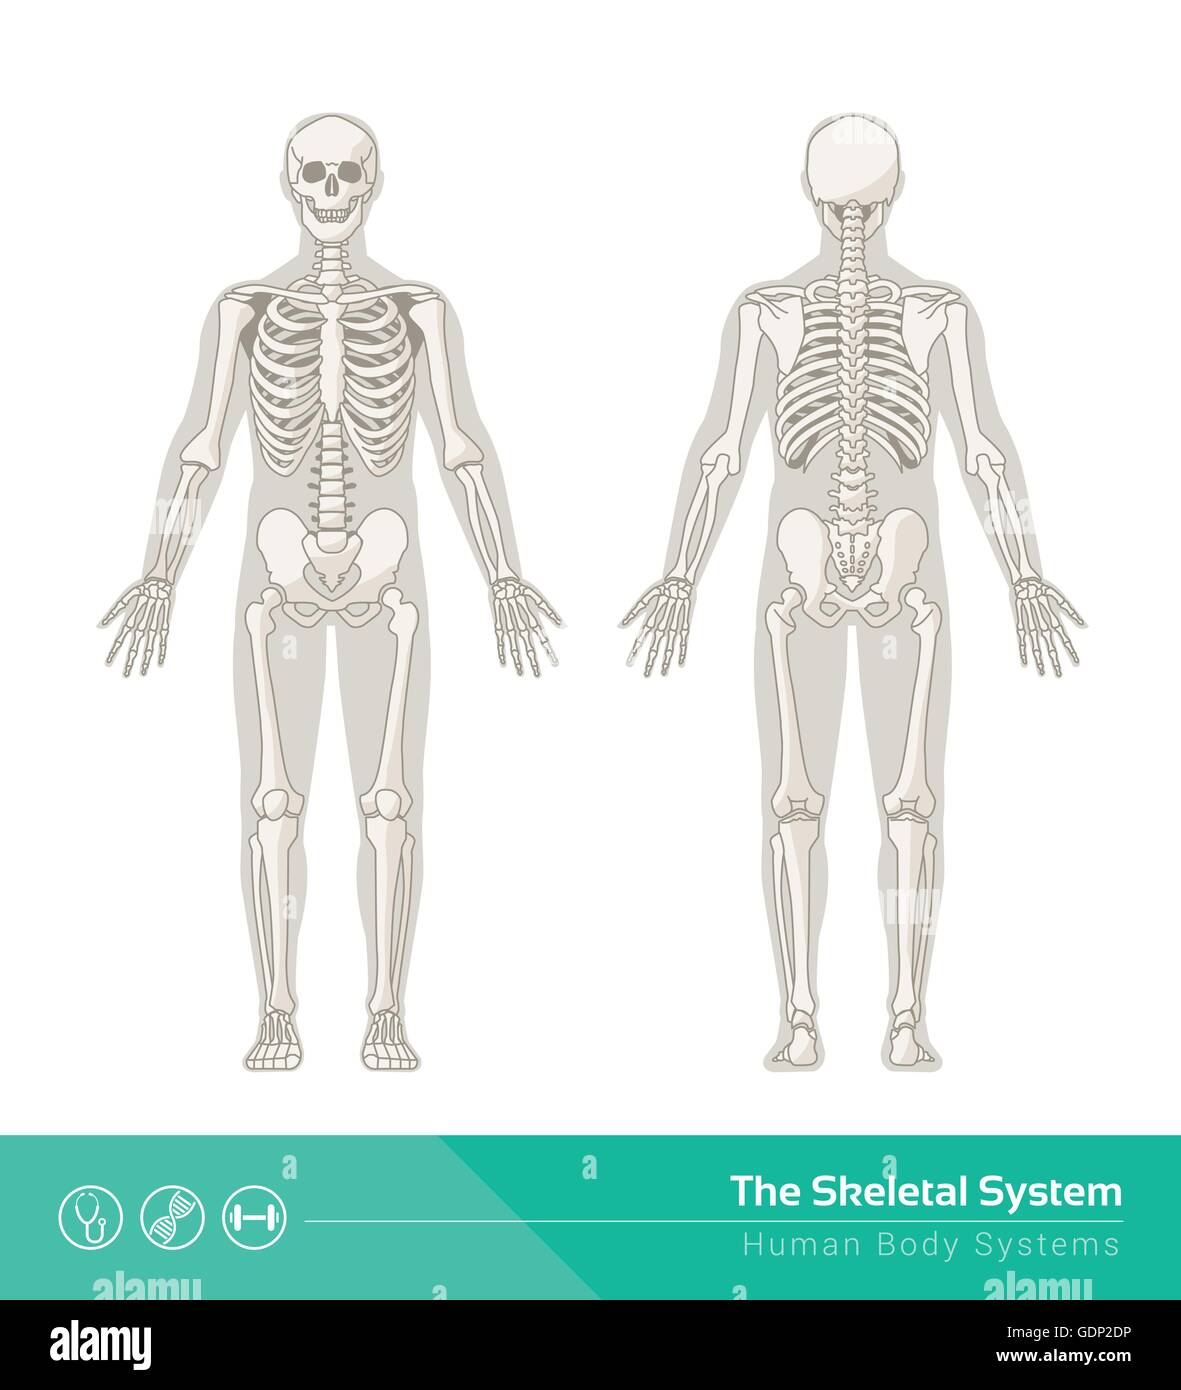 Le système squelettique humain, illustrations vectorielles de squelette humain vue avant et arrière Illustration de Vecteur